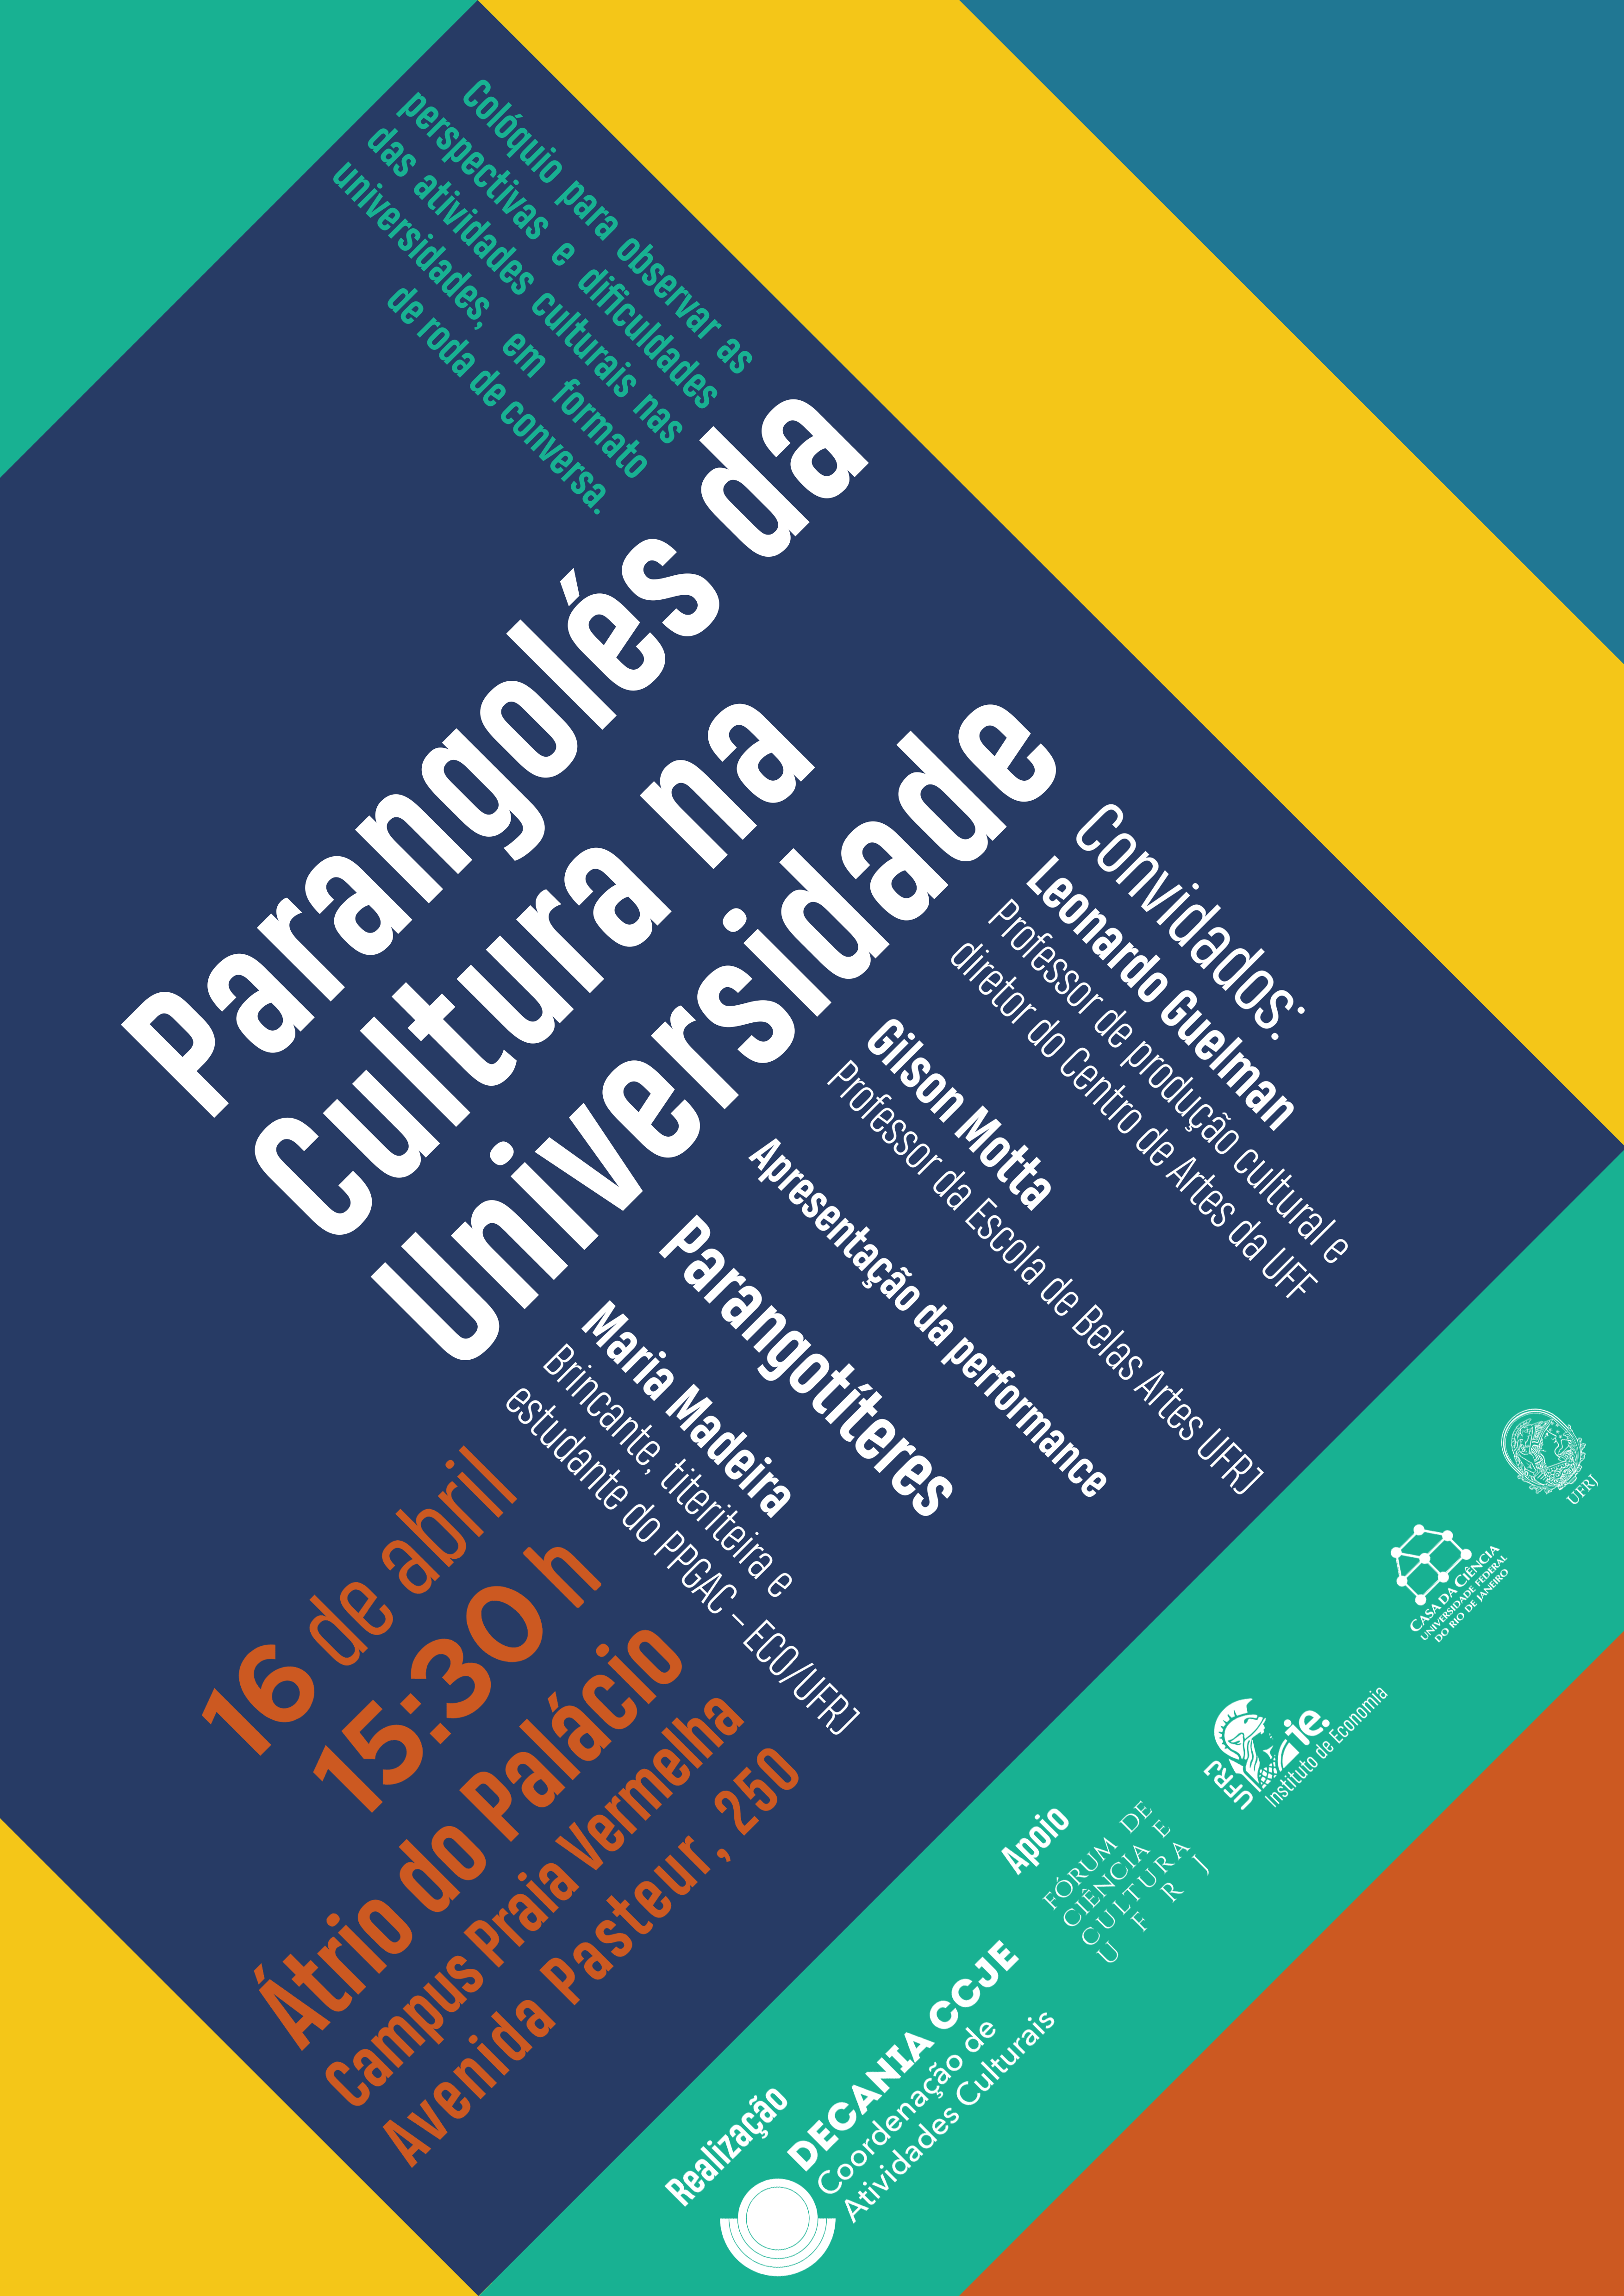 Colóquio Parangolés da Cultura na Universidade é remarcado para dia 16/04